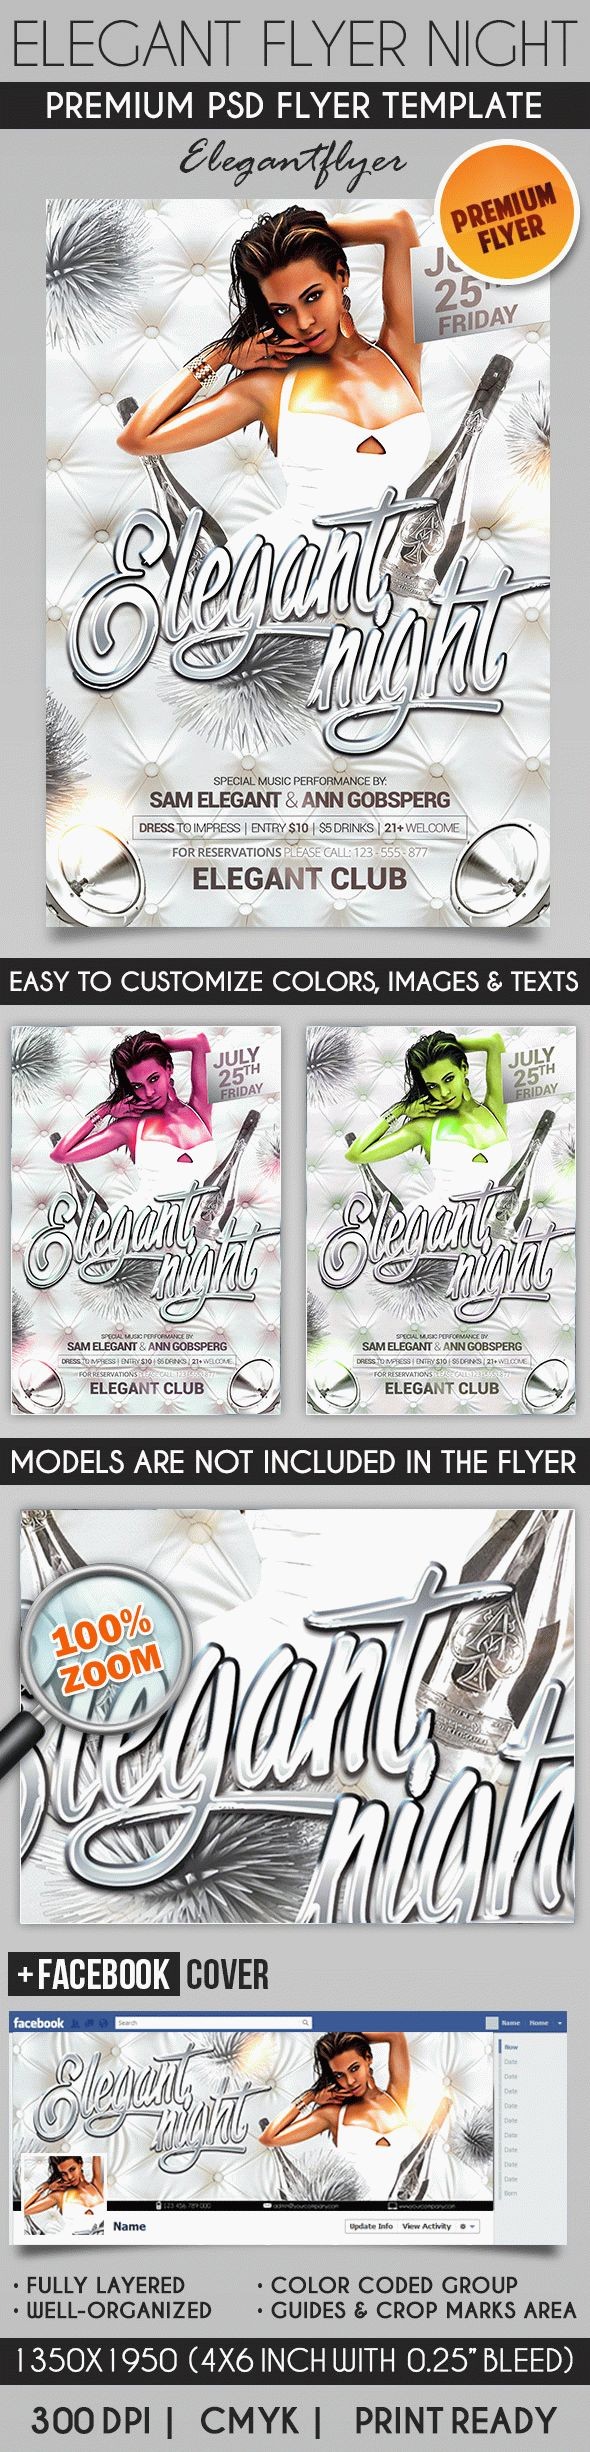 Eleganter Flyer Night Vol.2 by ElegantFlyer